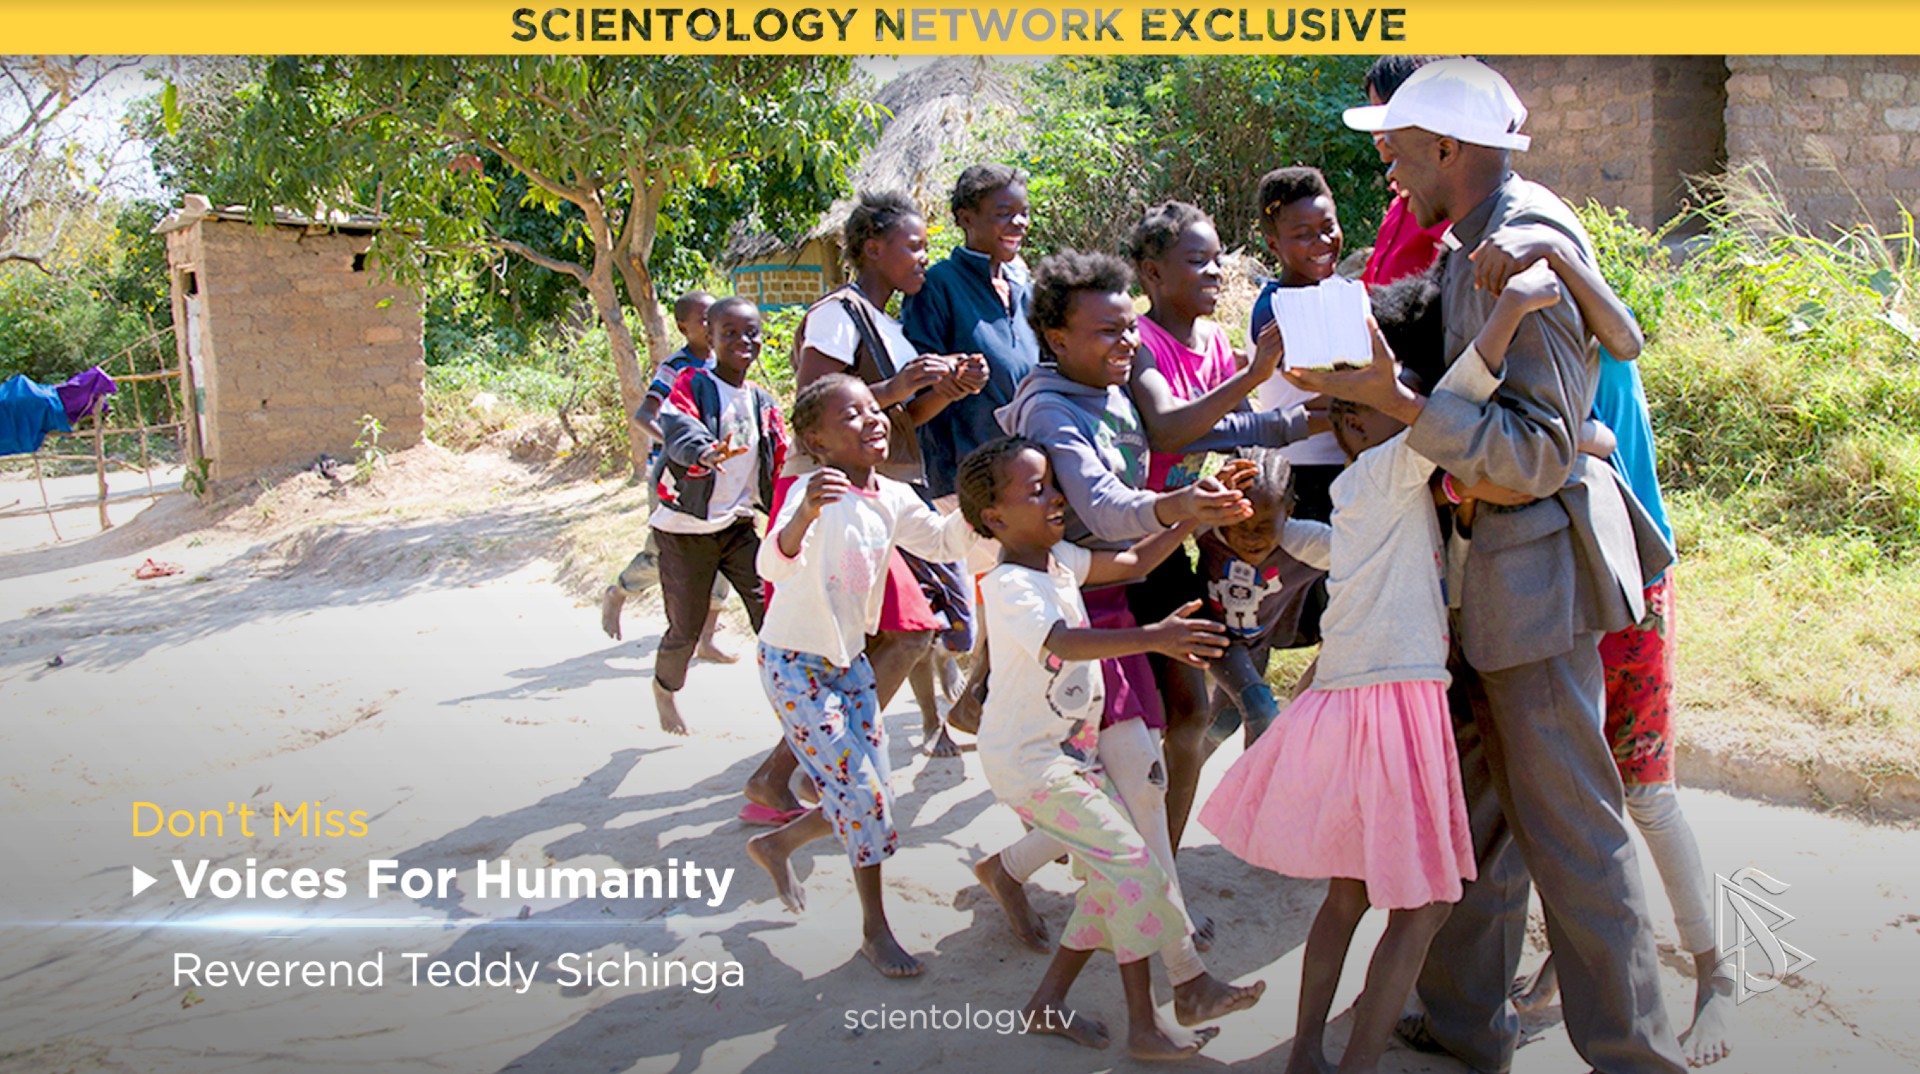 Rev. Teddy Sichinga pomocí jedné z humanitárních iniciativ sponzorovaných Scientologií mění životy a zajišťuje budoucnost pomocí morálního kodexu zdravého rozumu Cesta ke štěstí.